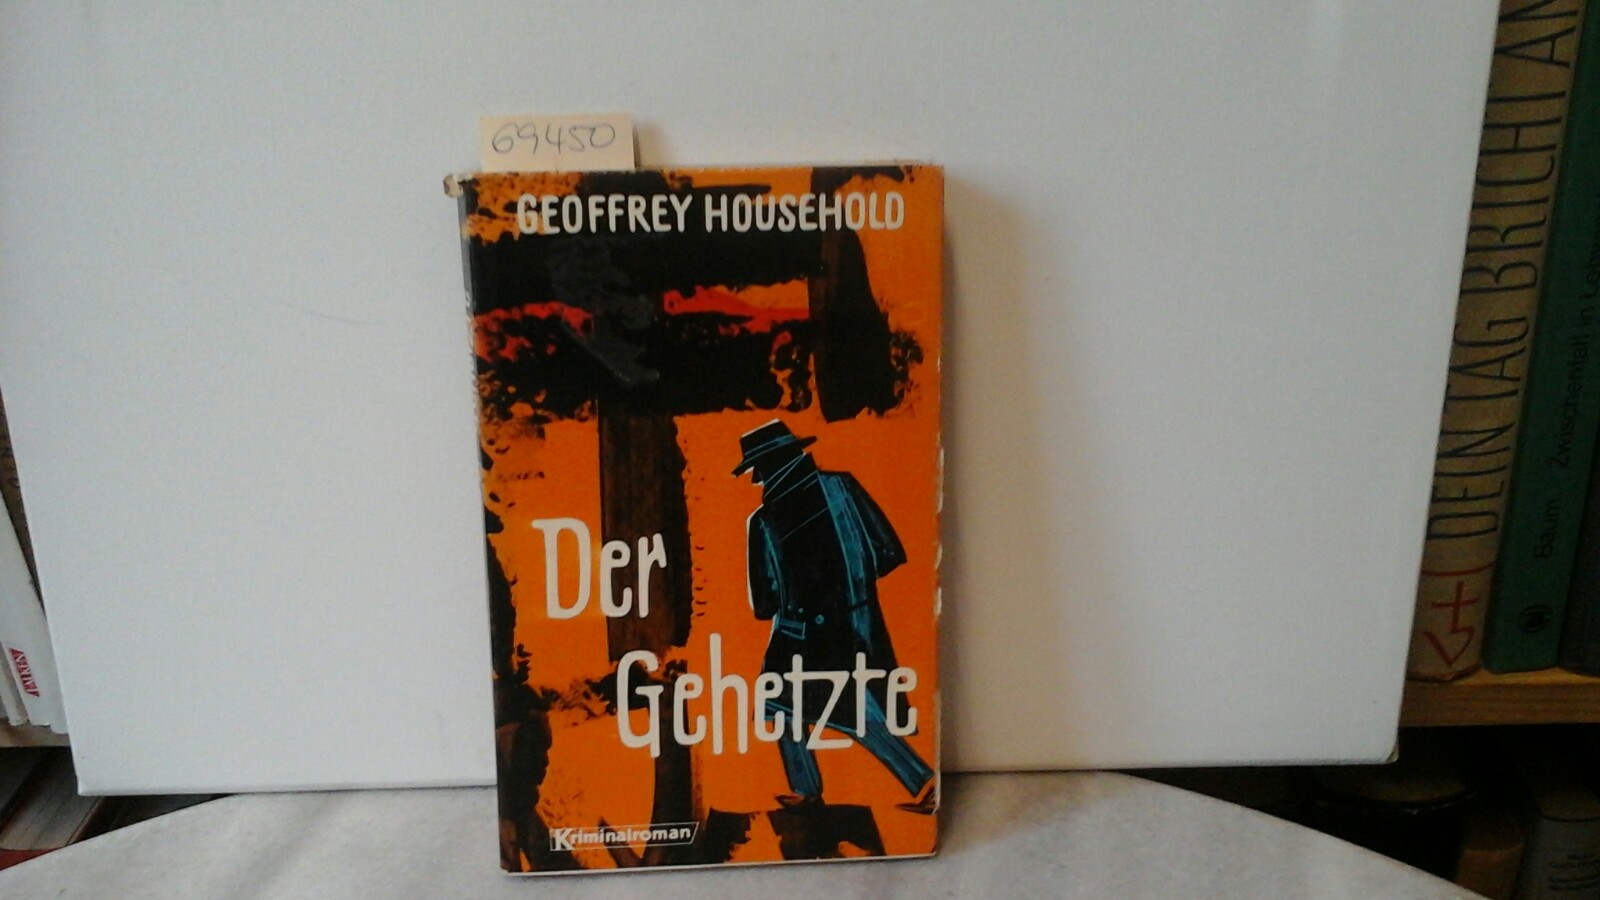 HOUSEHOLD, GEOFFREY: Der Gehetzte. Kriminalroman.